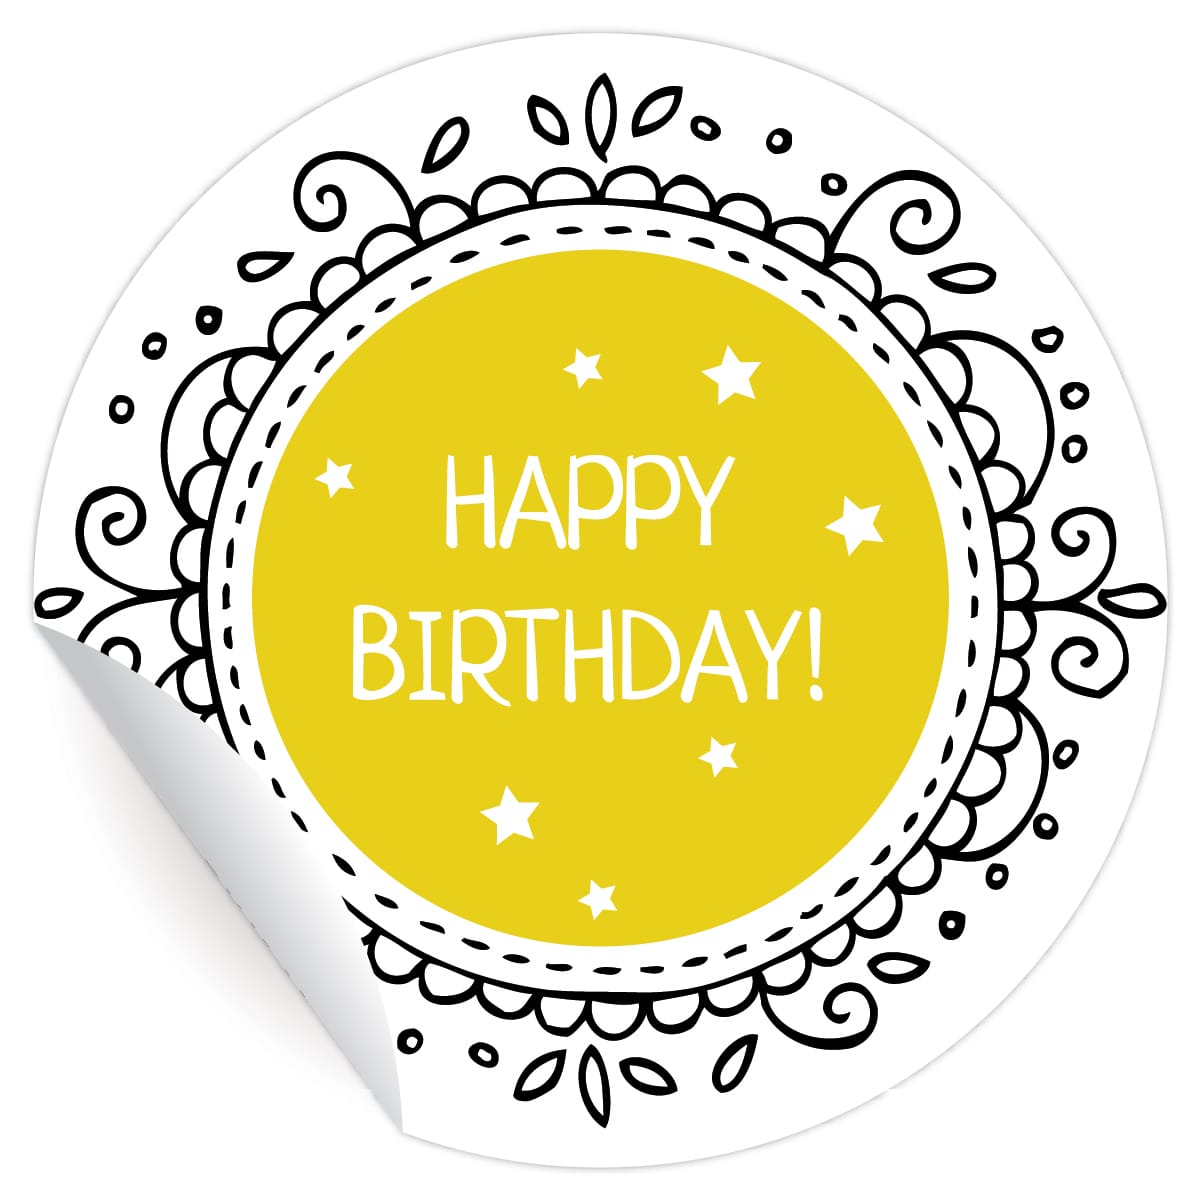 Kartenkaufrausch: Geburtstags Aufkleber "Happy Birthday" aus unserer Geburtstags Papeterie in gelb